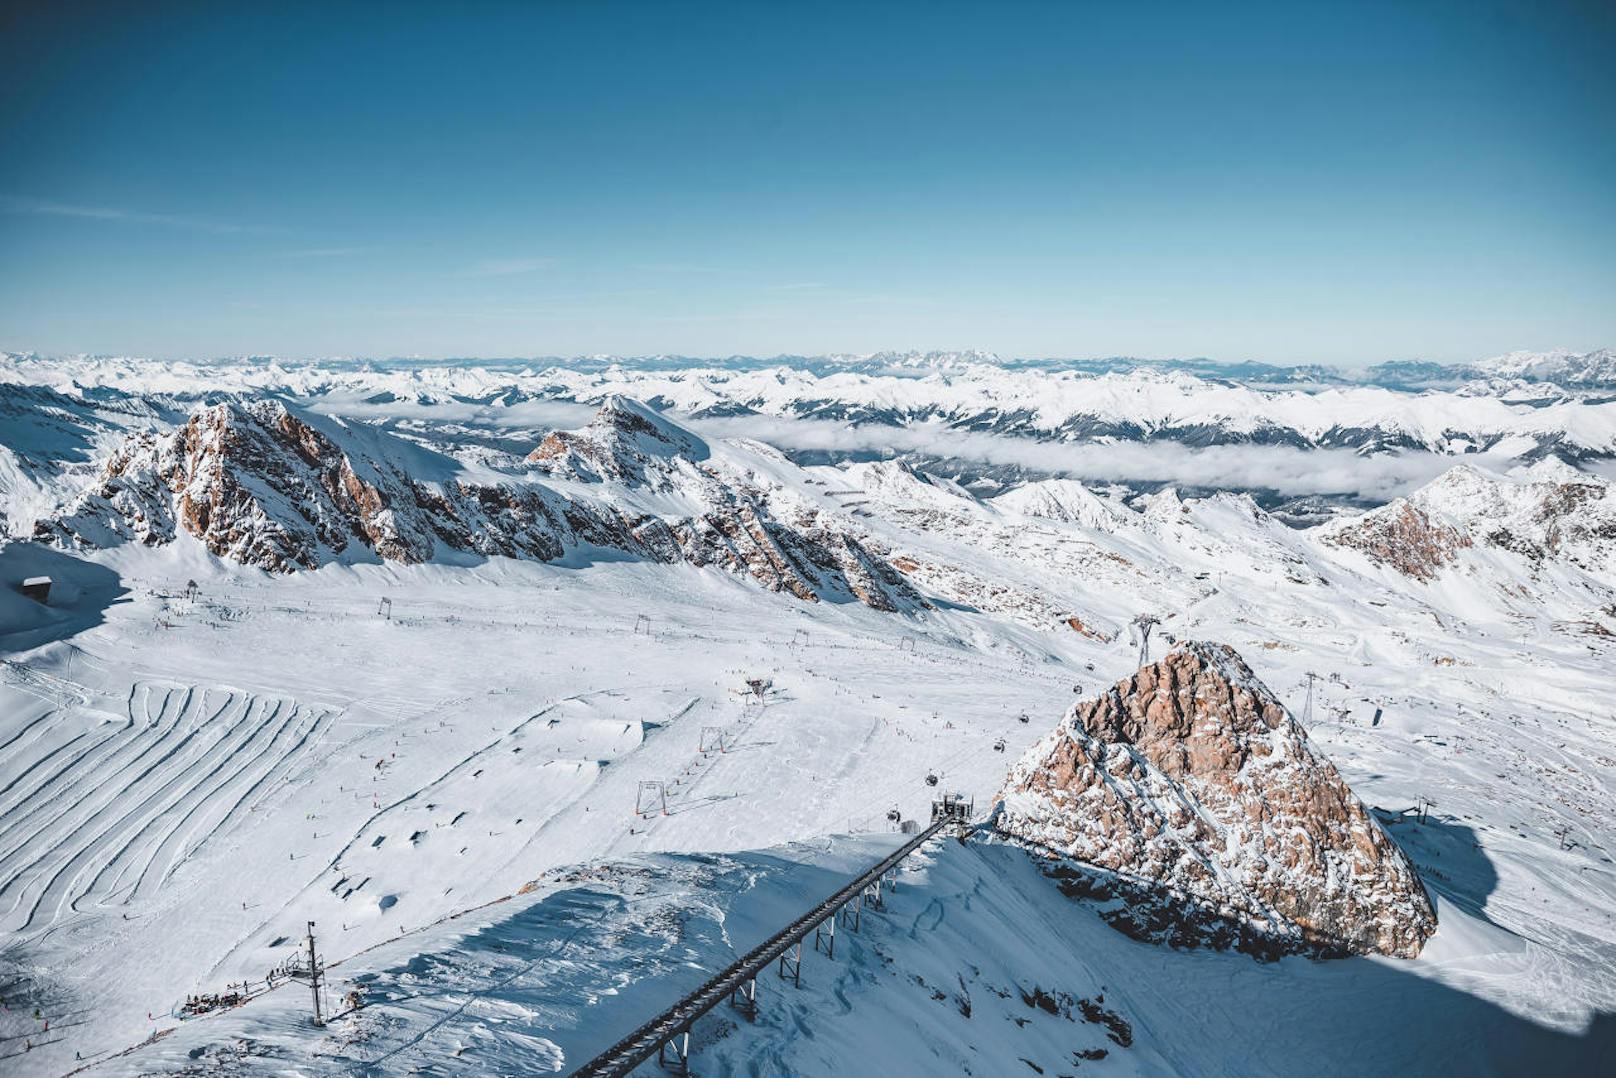 Die Pisten und Loipen am Kitzsteinhorn-Gletscher und die atemberaubende verschneite Bergwelt bei Sonnenschein und wolkenlosem, blauem Himmel, aufgenommen am 10. November 2019, Kaprun, Österreich.